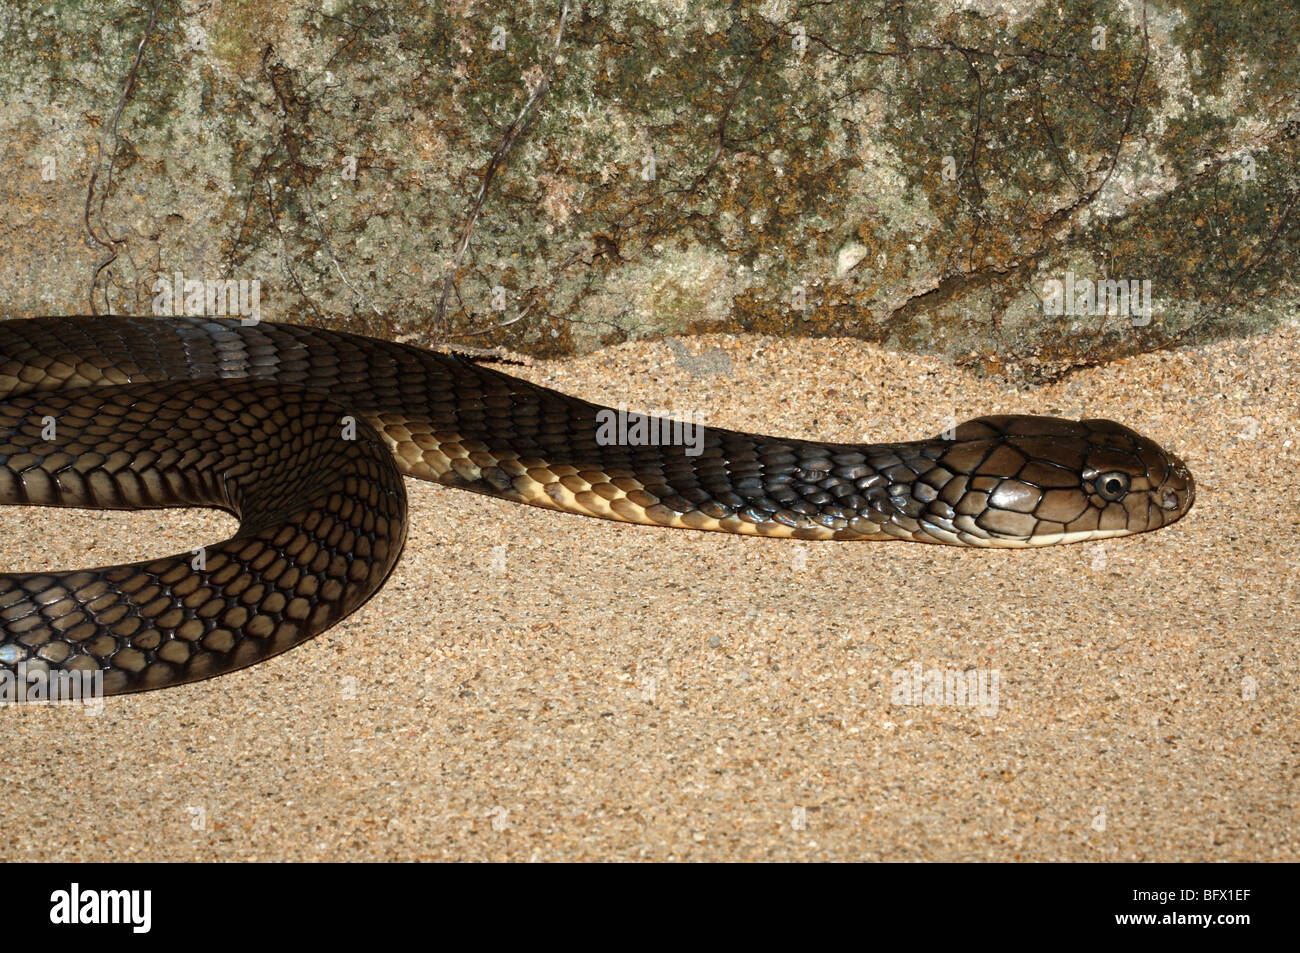 Re Cobra, Ophiophagus hannah, Bali, Indonesia. Questo serpente è il più grande della terra velenosi serpenti Foto Stock